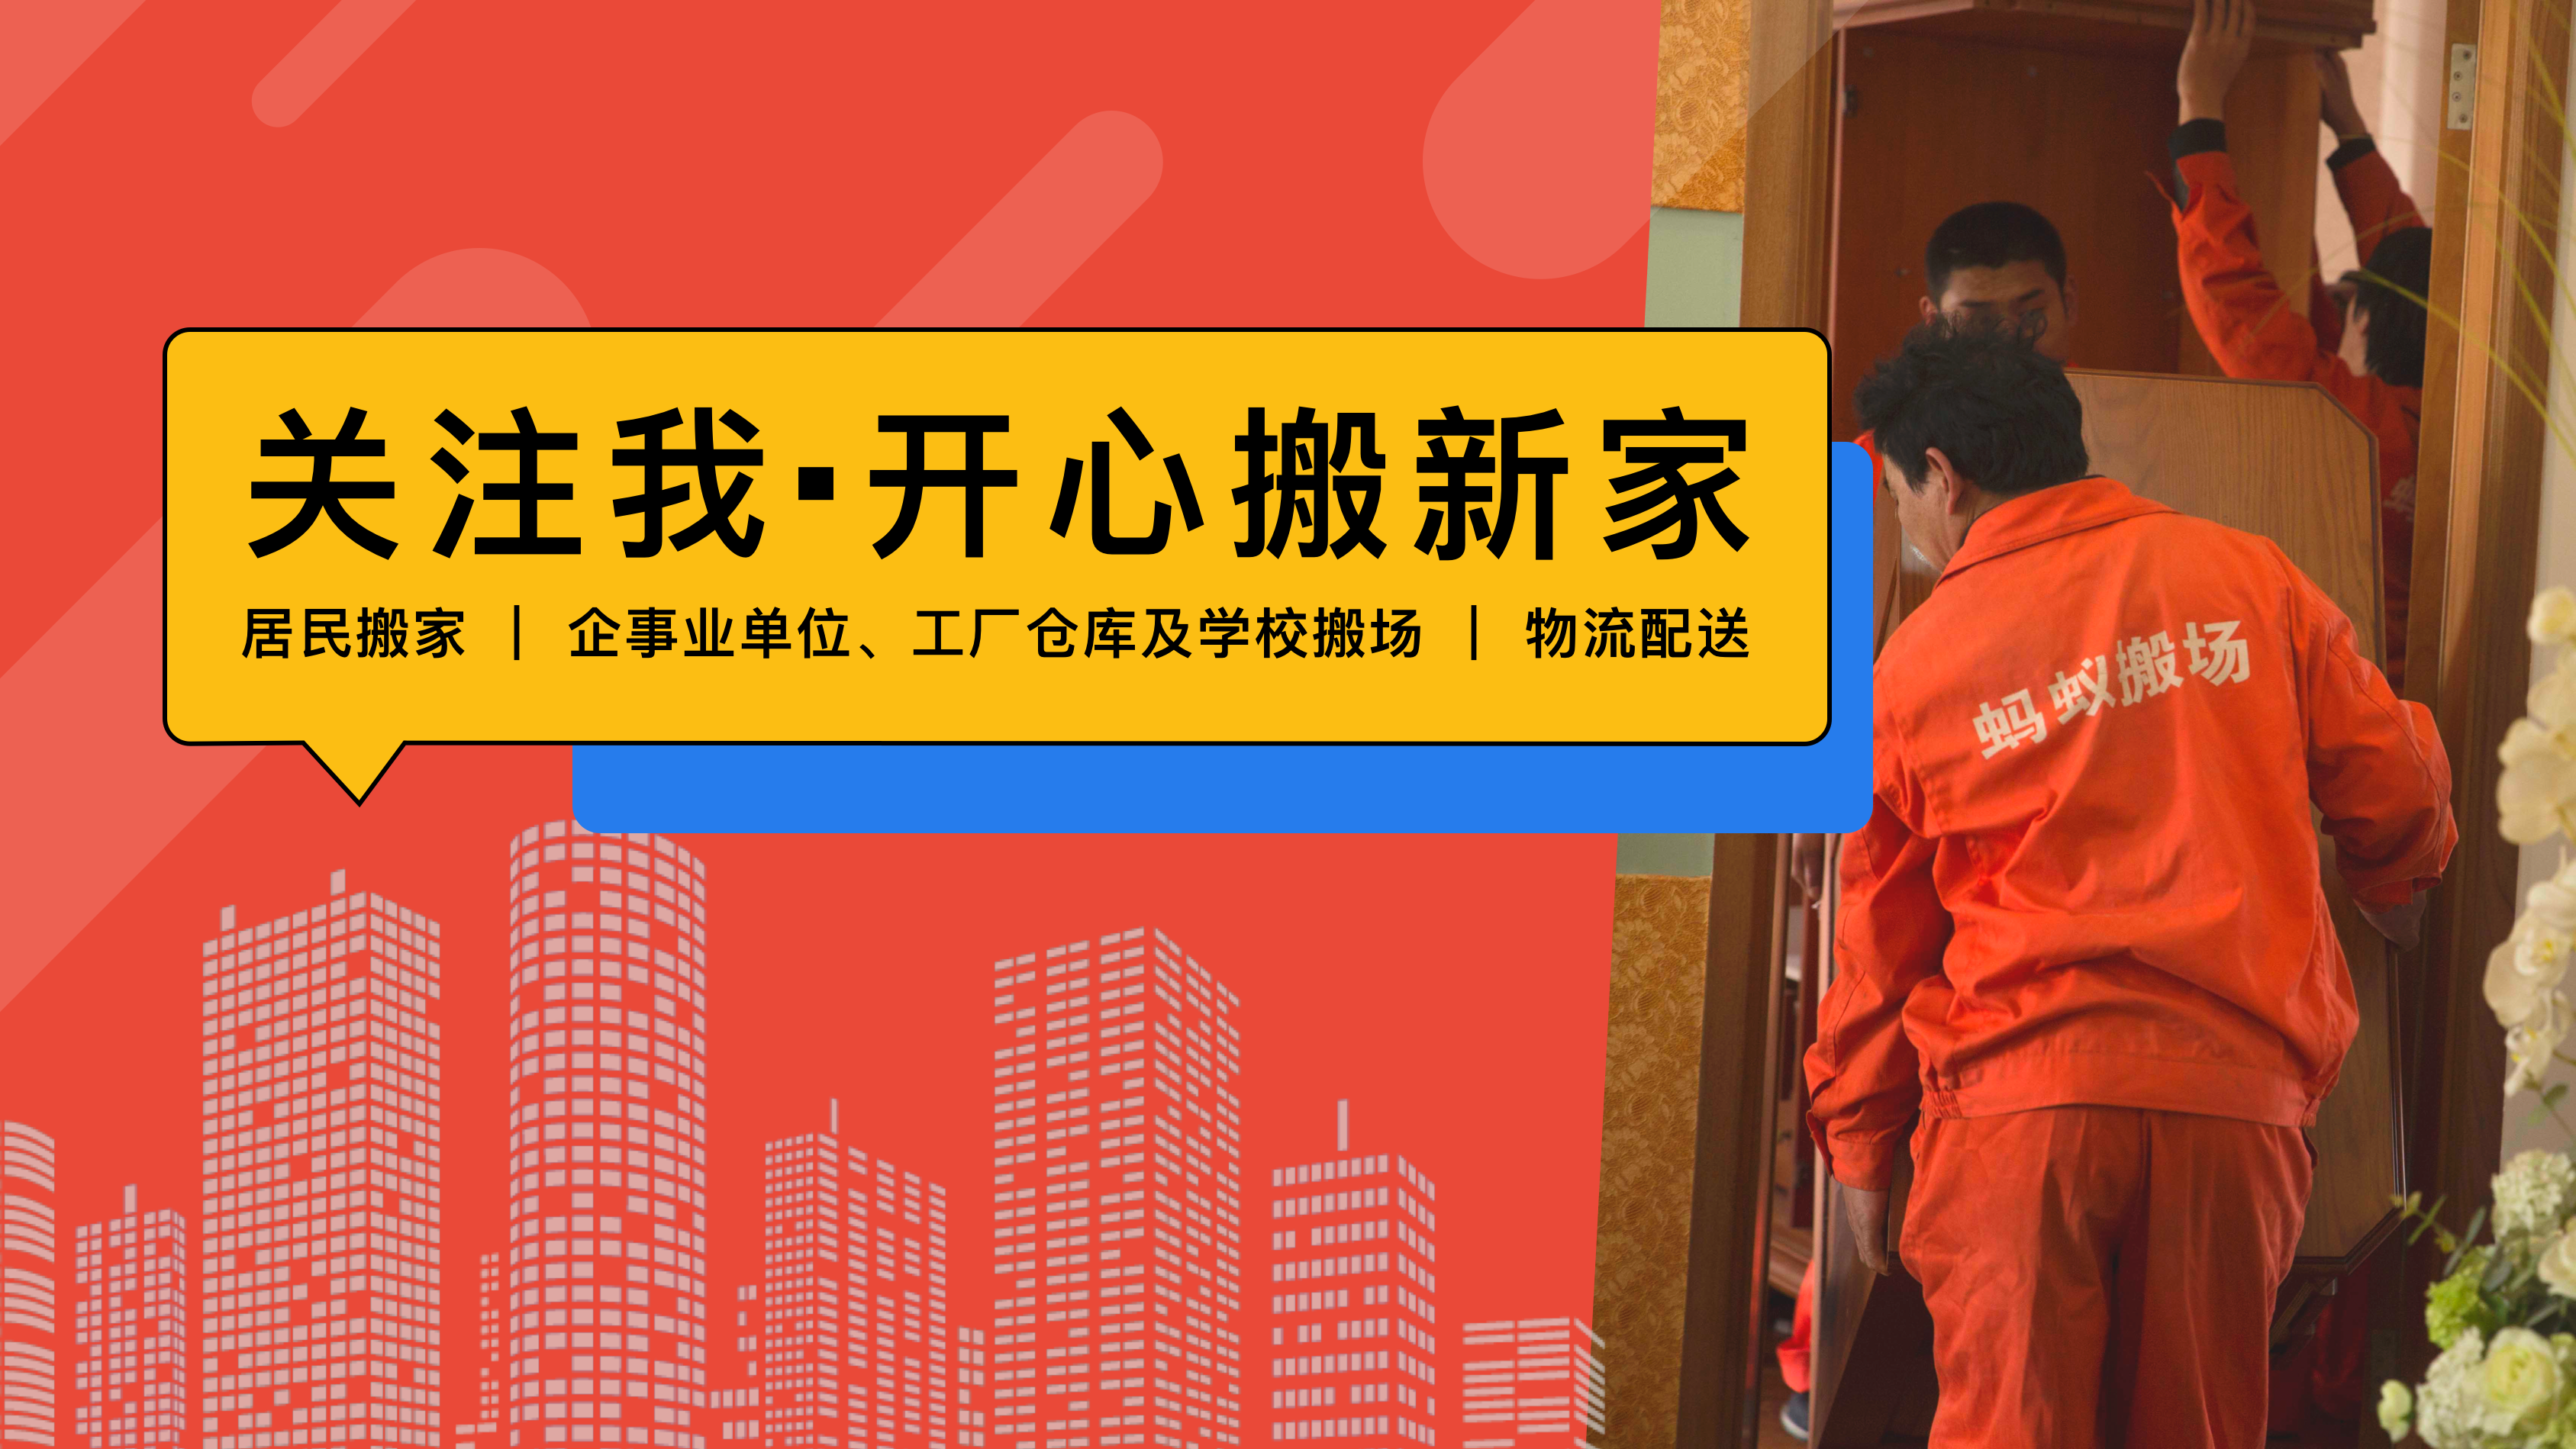 上海搬家公司一览表_看图猜成语文字答案攻略大全表一览_上海 搬家 公司